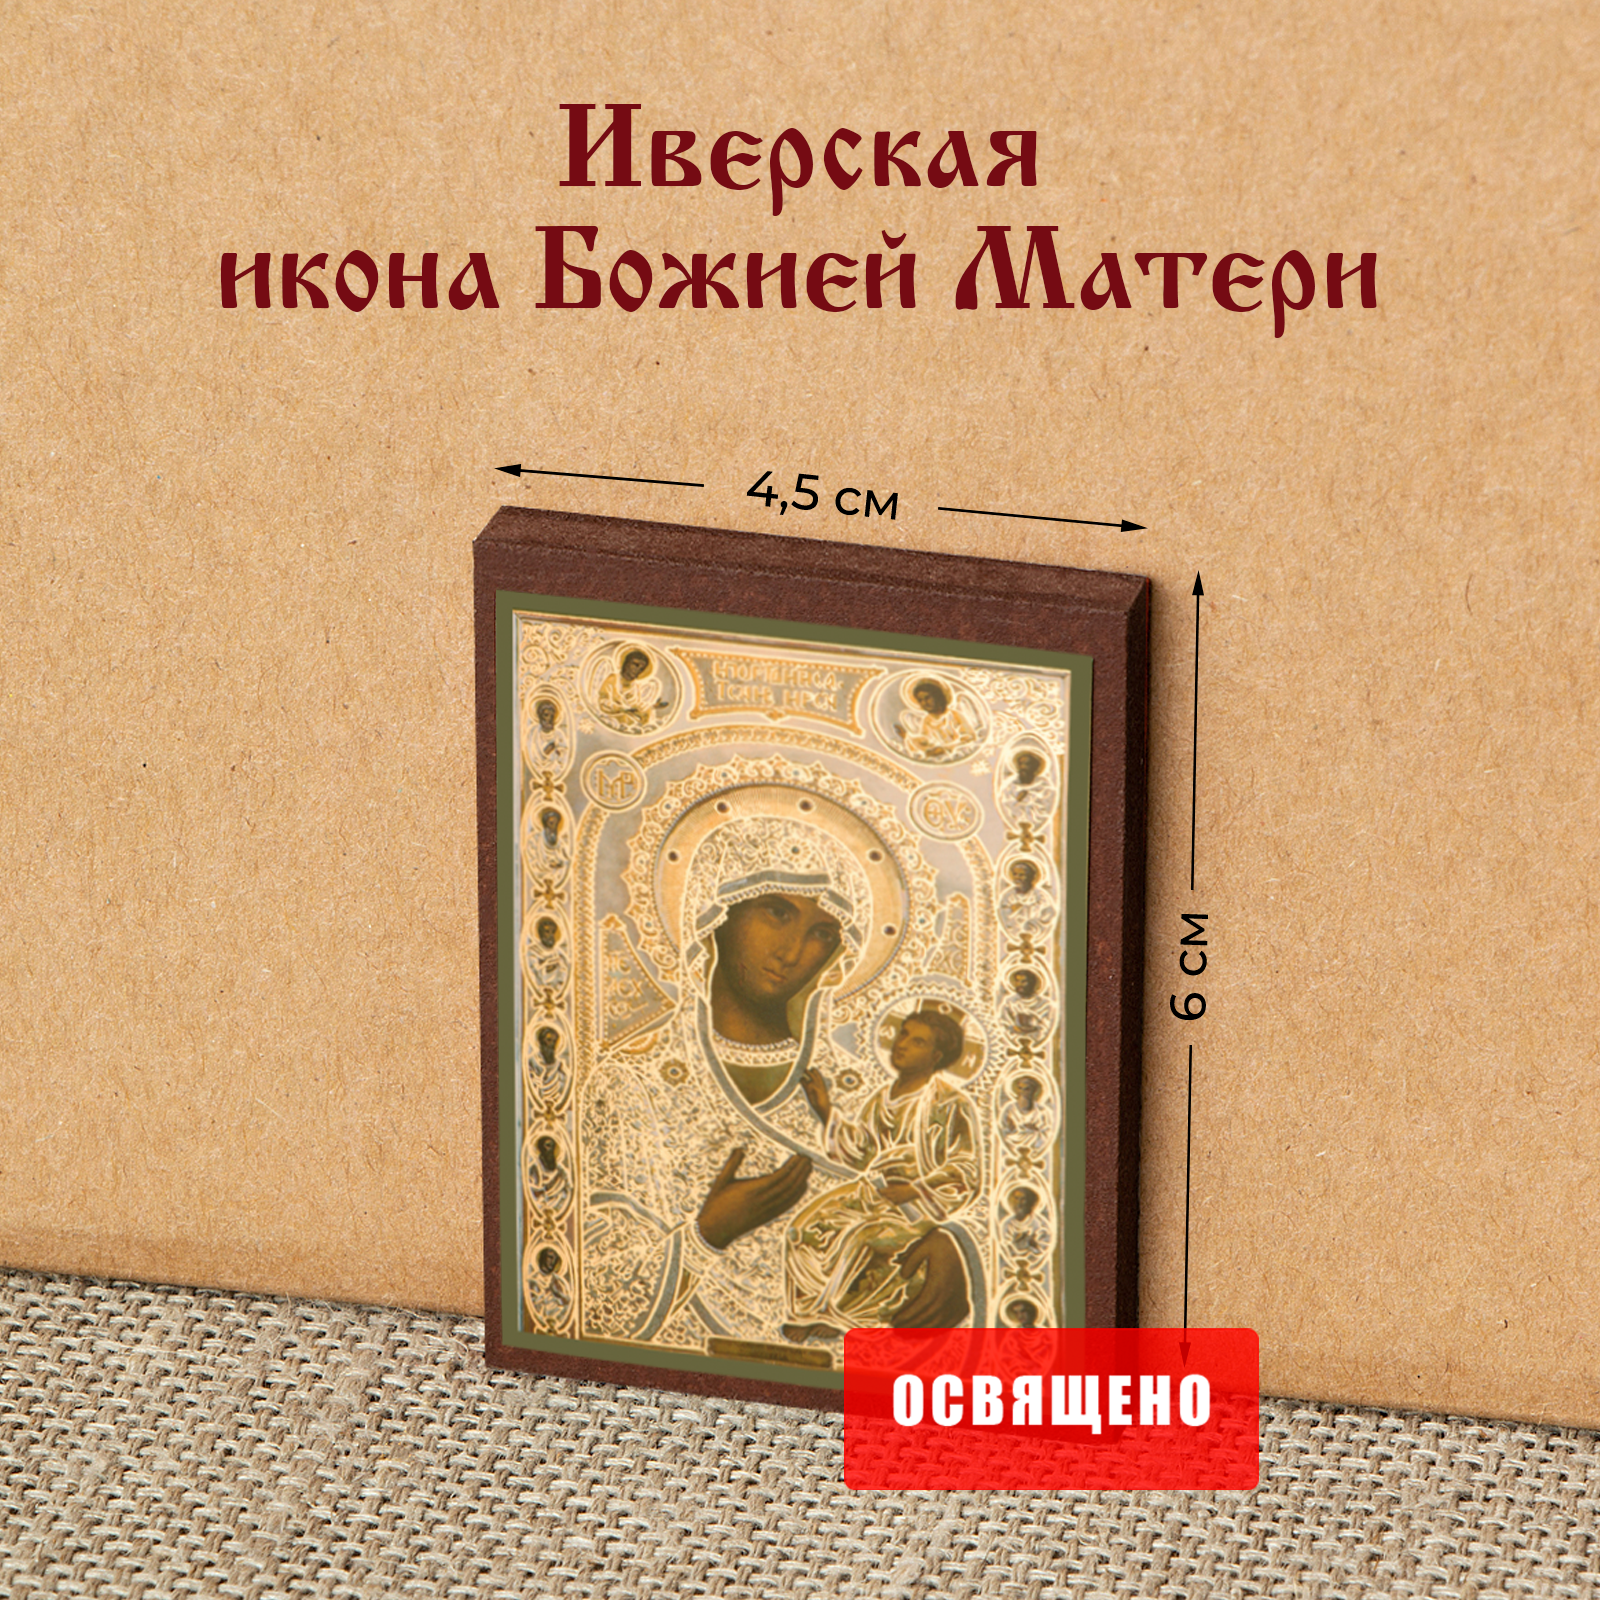 Икона Божией Матери "Иверская" на МДФ 4х6